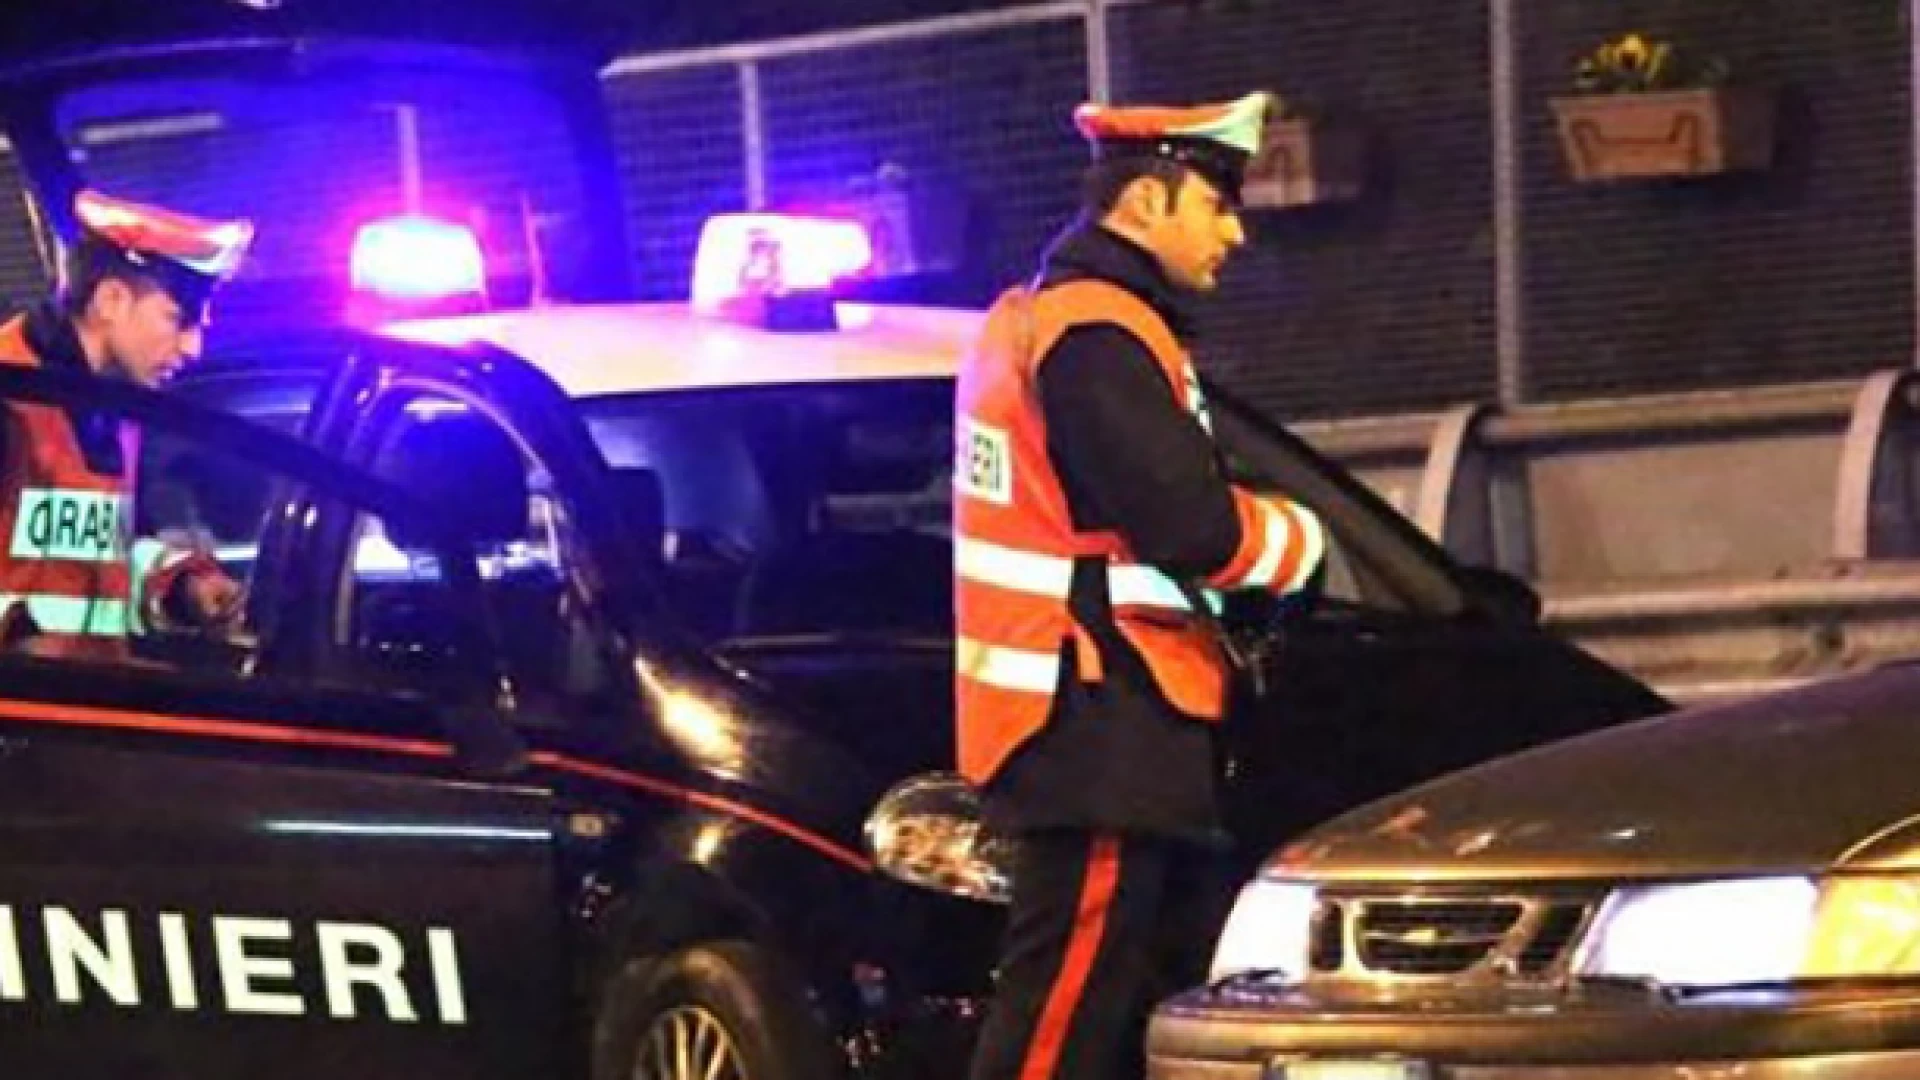 VENAFRO: Servizio a largo raggio dei Carabinieri di Venafro: controllo alla circolazione stradale con violazioni per guida in stato di ebbrezza e sotto l’influenza di sostanze stupefacenti.